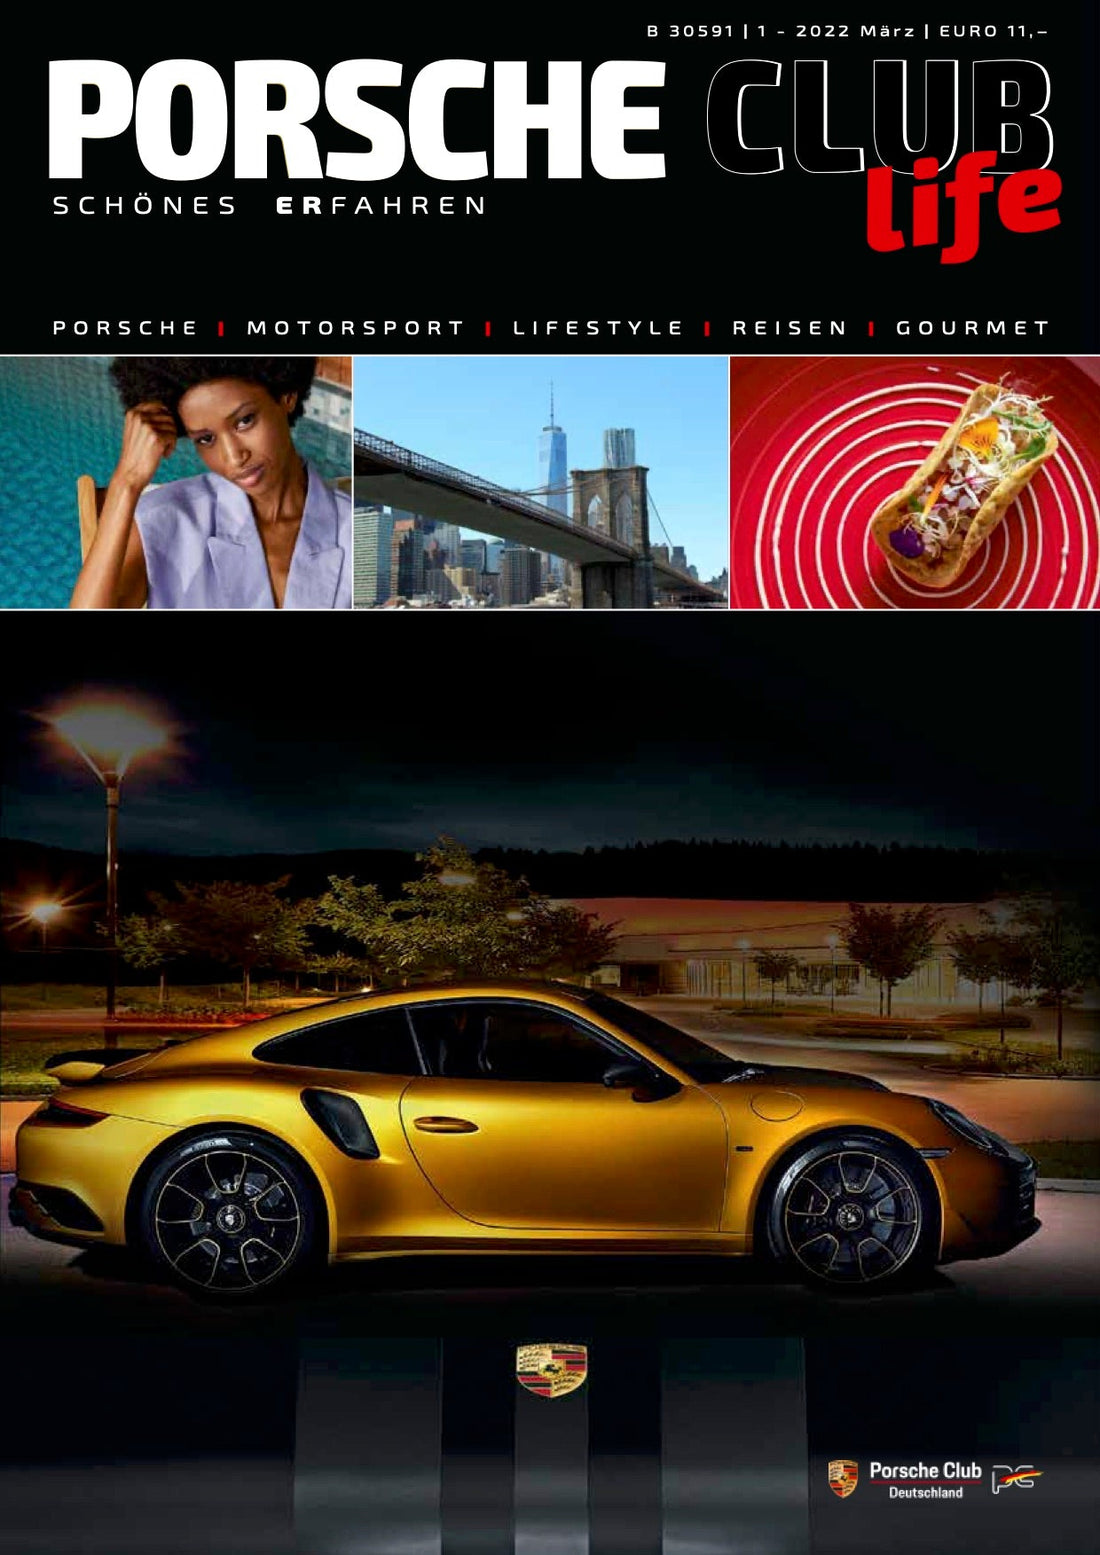 Unser "Floral" Silk Twilly im Porsche Club Magazin